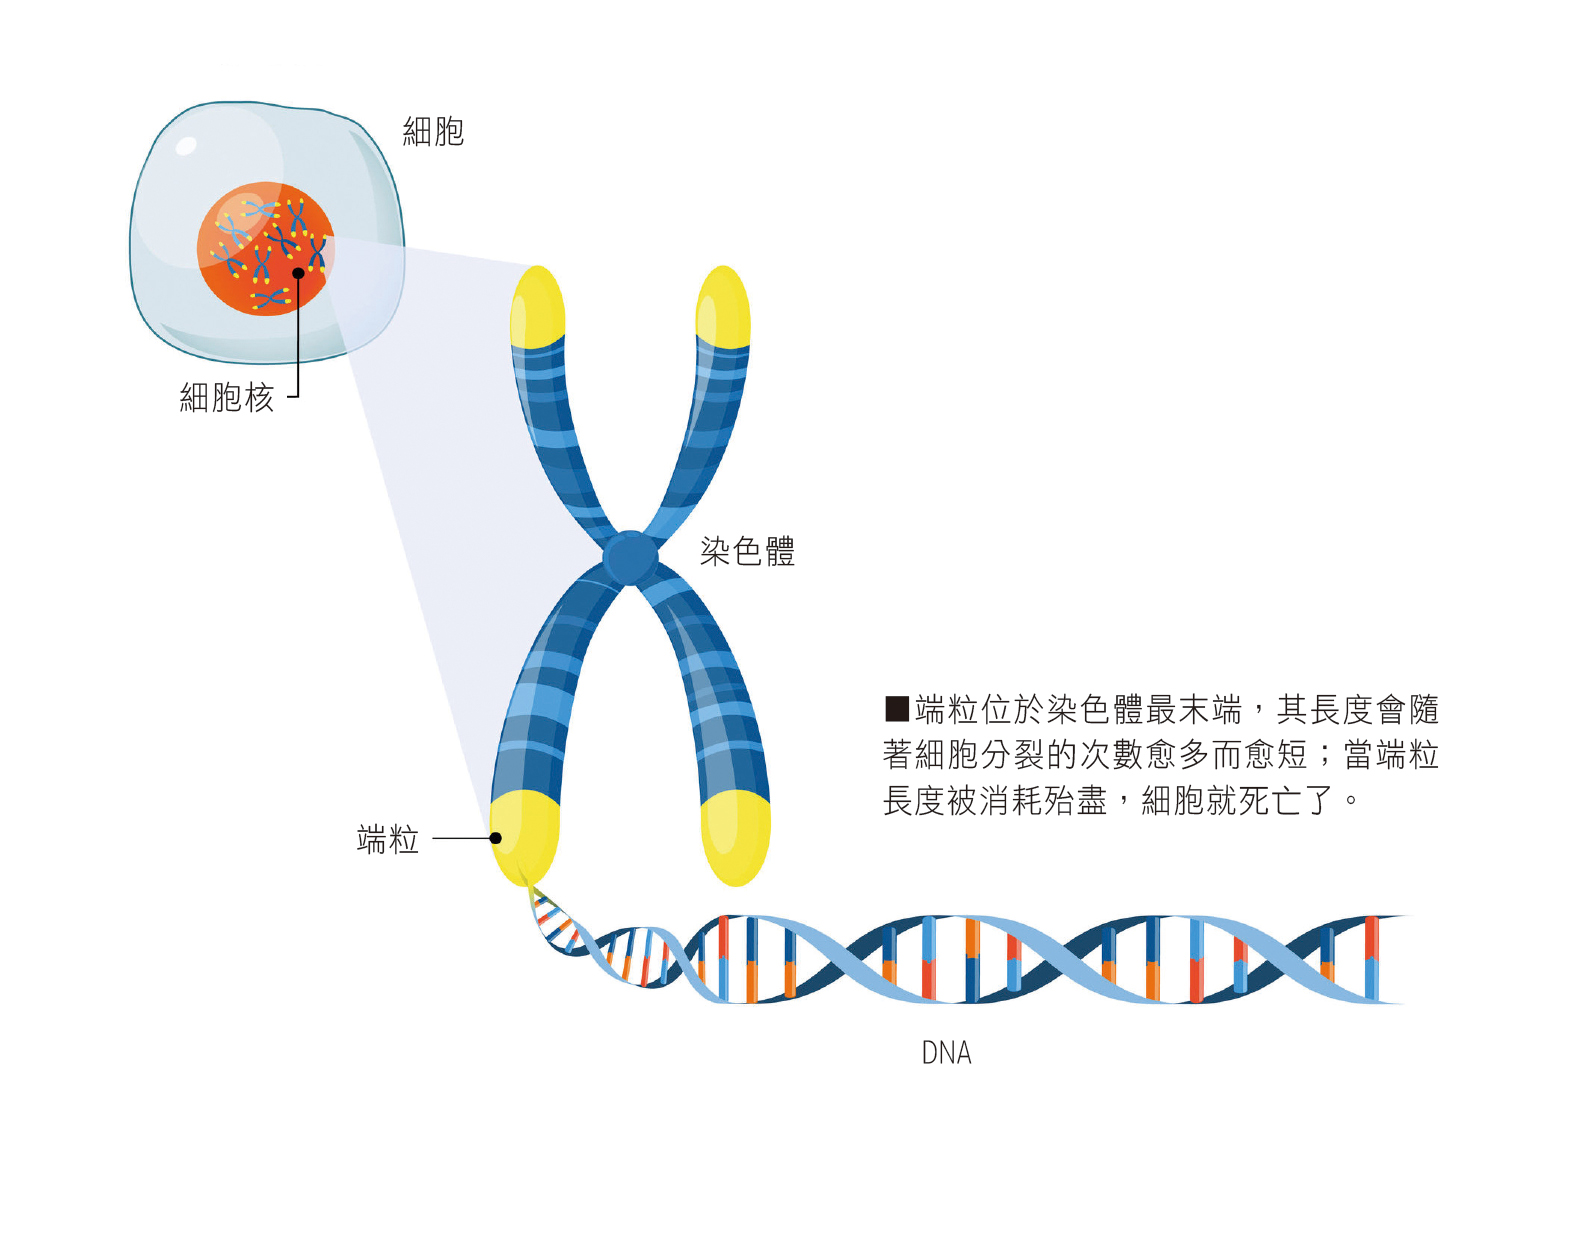 端粒位於染色體最末端，其長度會隨著細胞分裂的次數愈多而愈短；當端粒長度被消耗殆盡，細胞就死亡了。